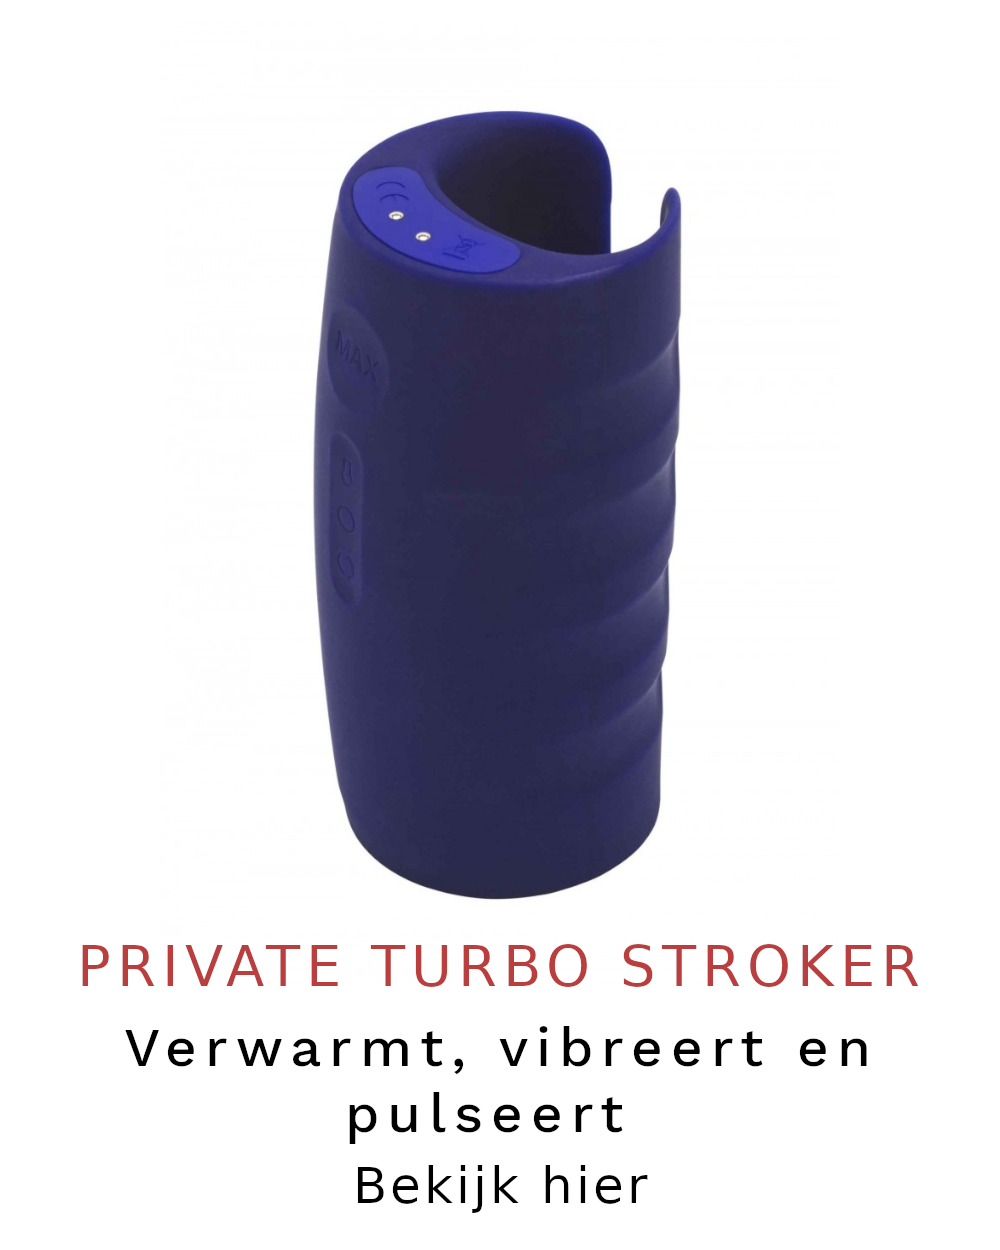 Private Turbo Stroker: verwarmt, vibreert en pulseert